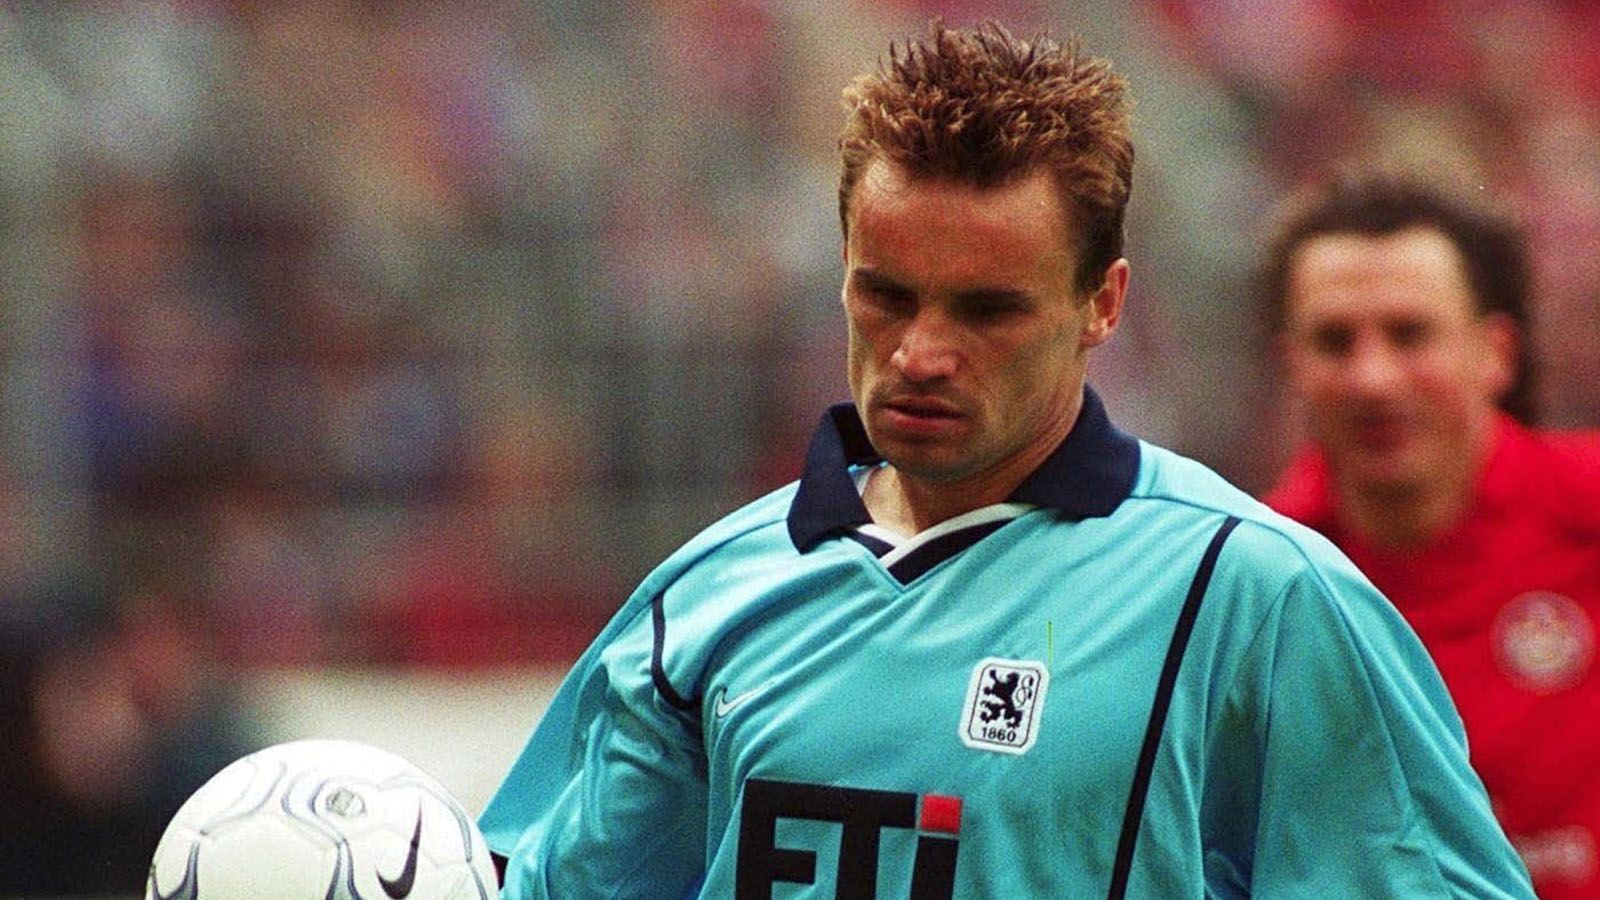 
                <strong>Saison 1999/2000</strong><br>
                Torschützenkönig: Martin Max (TSV 1860 München) - 19 Tore
              